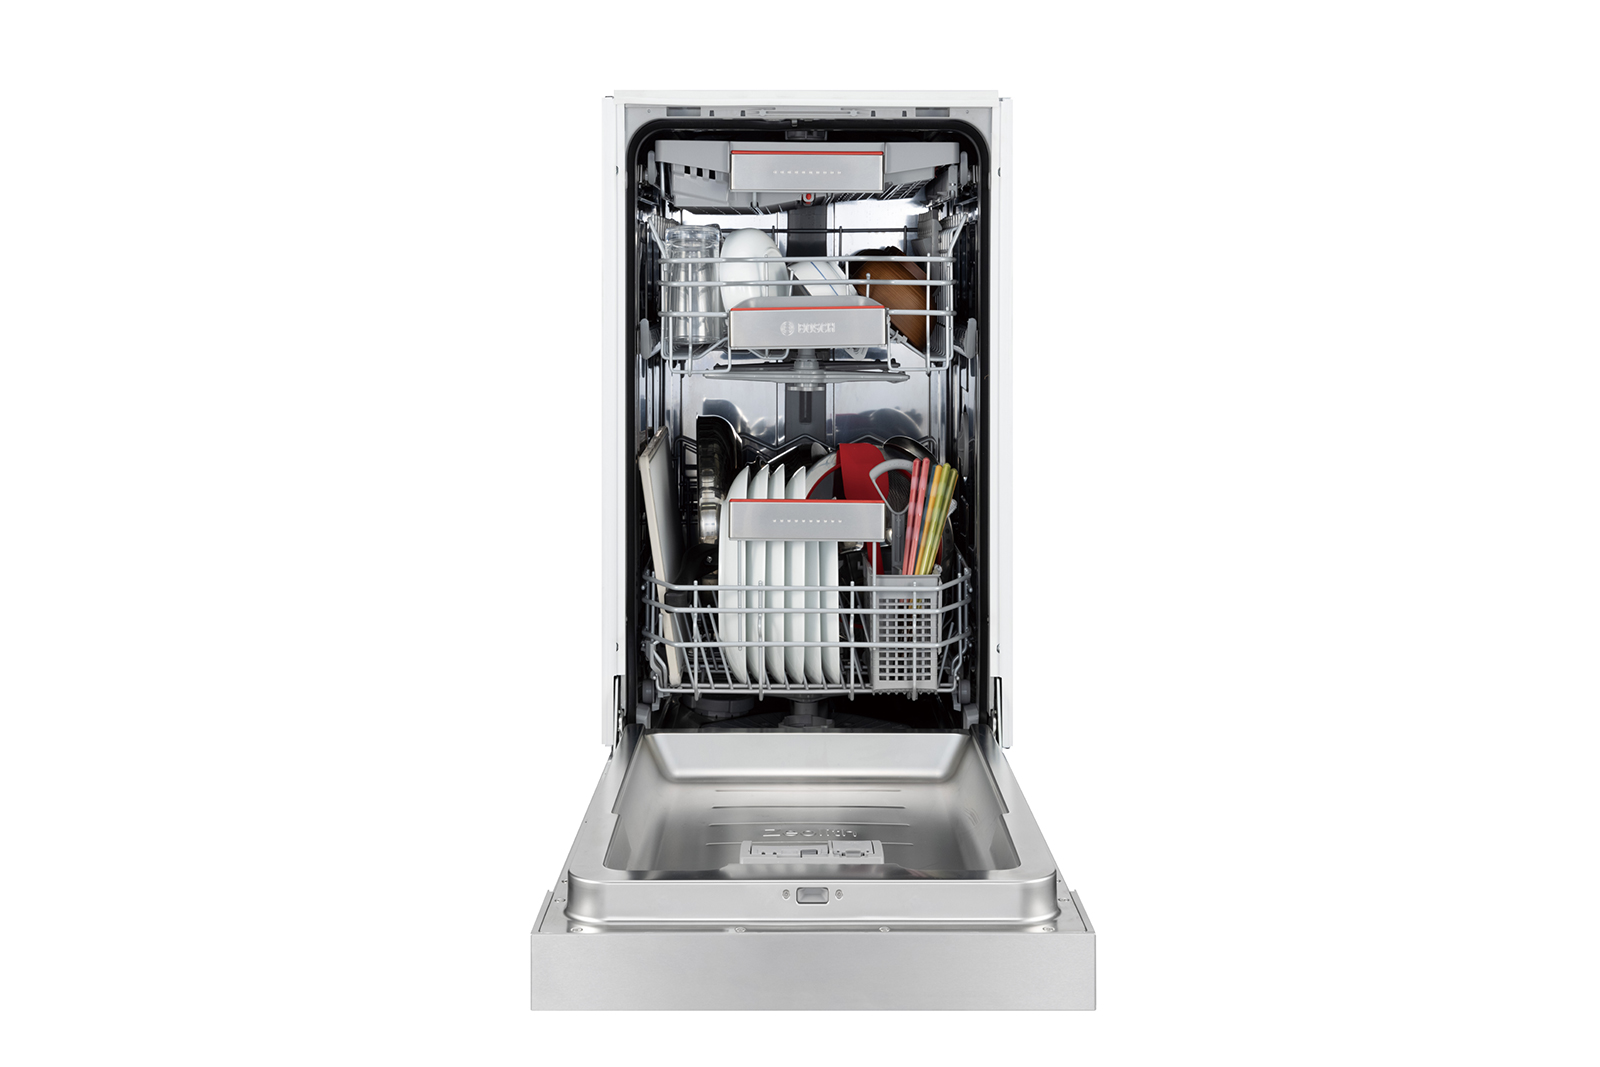 ビルトイン食洗機 フロントオープン W450 前面操作タイプ（本体のみ） KB-PT004-02-G234 およそ8人分の基本的な食器を一気に洗浄できる容量です。2人暮らしで1日分の食器量がまとめて洗える容量とお考えください